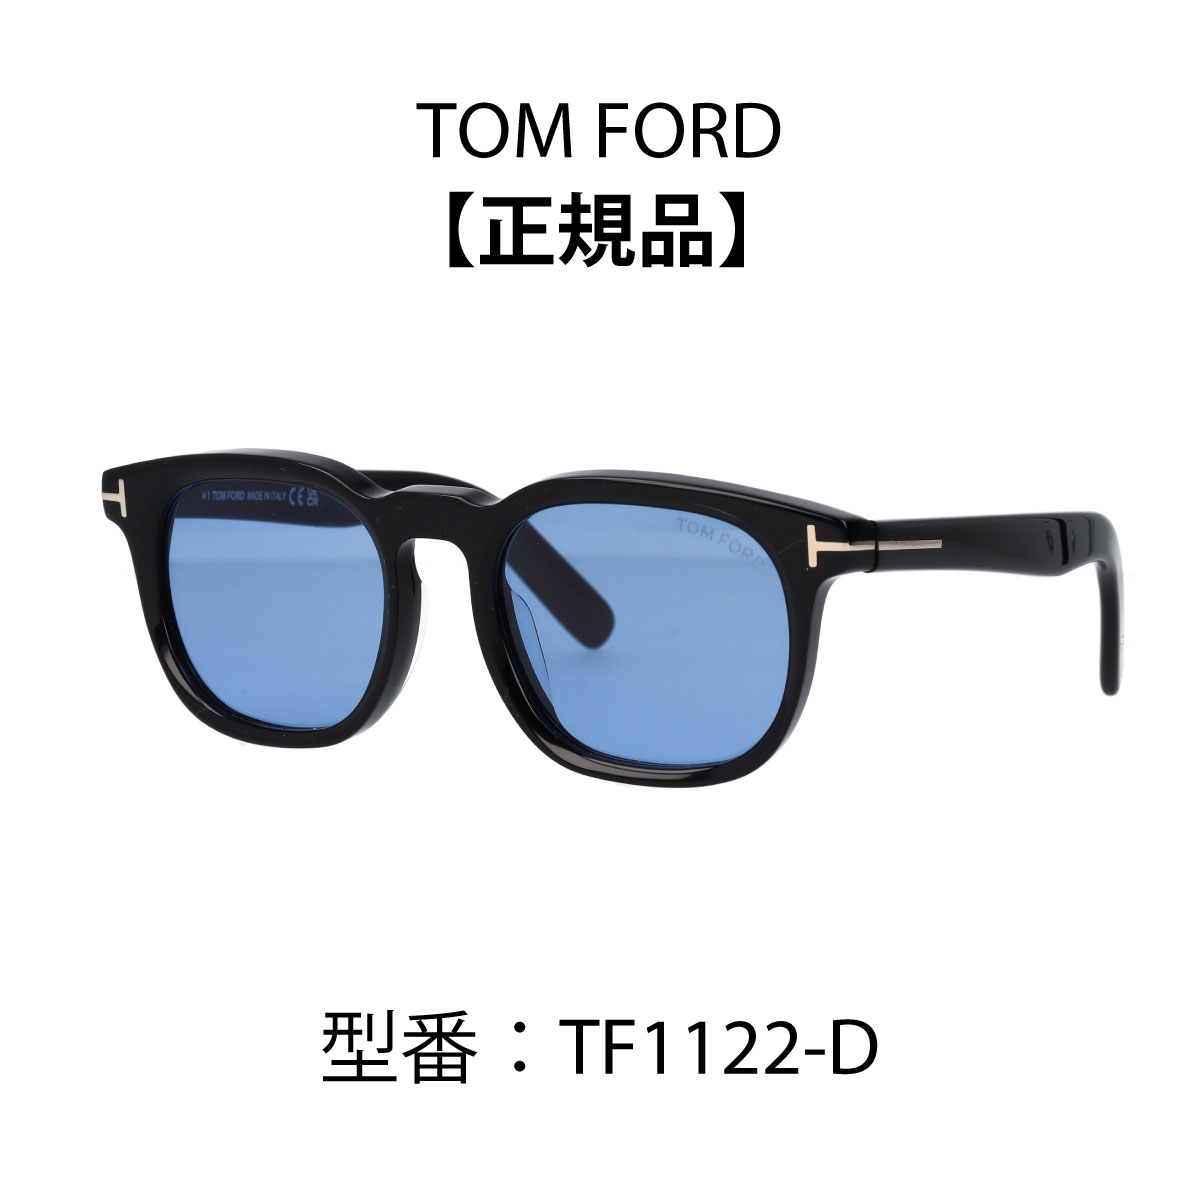 トムフォード TOM FORD トムフォード サングラス ウェリントン型 アジアンフィット ブラック グレー ダークハバナ FT1122-D/S (TF1122-D) 01A 20E 52N 【海外正規品】